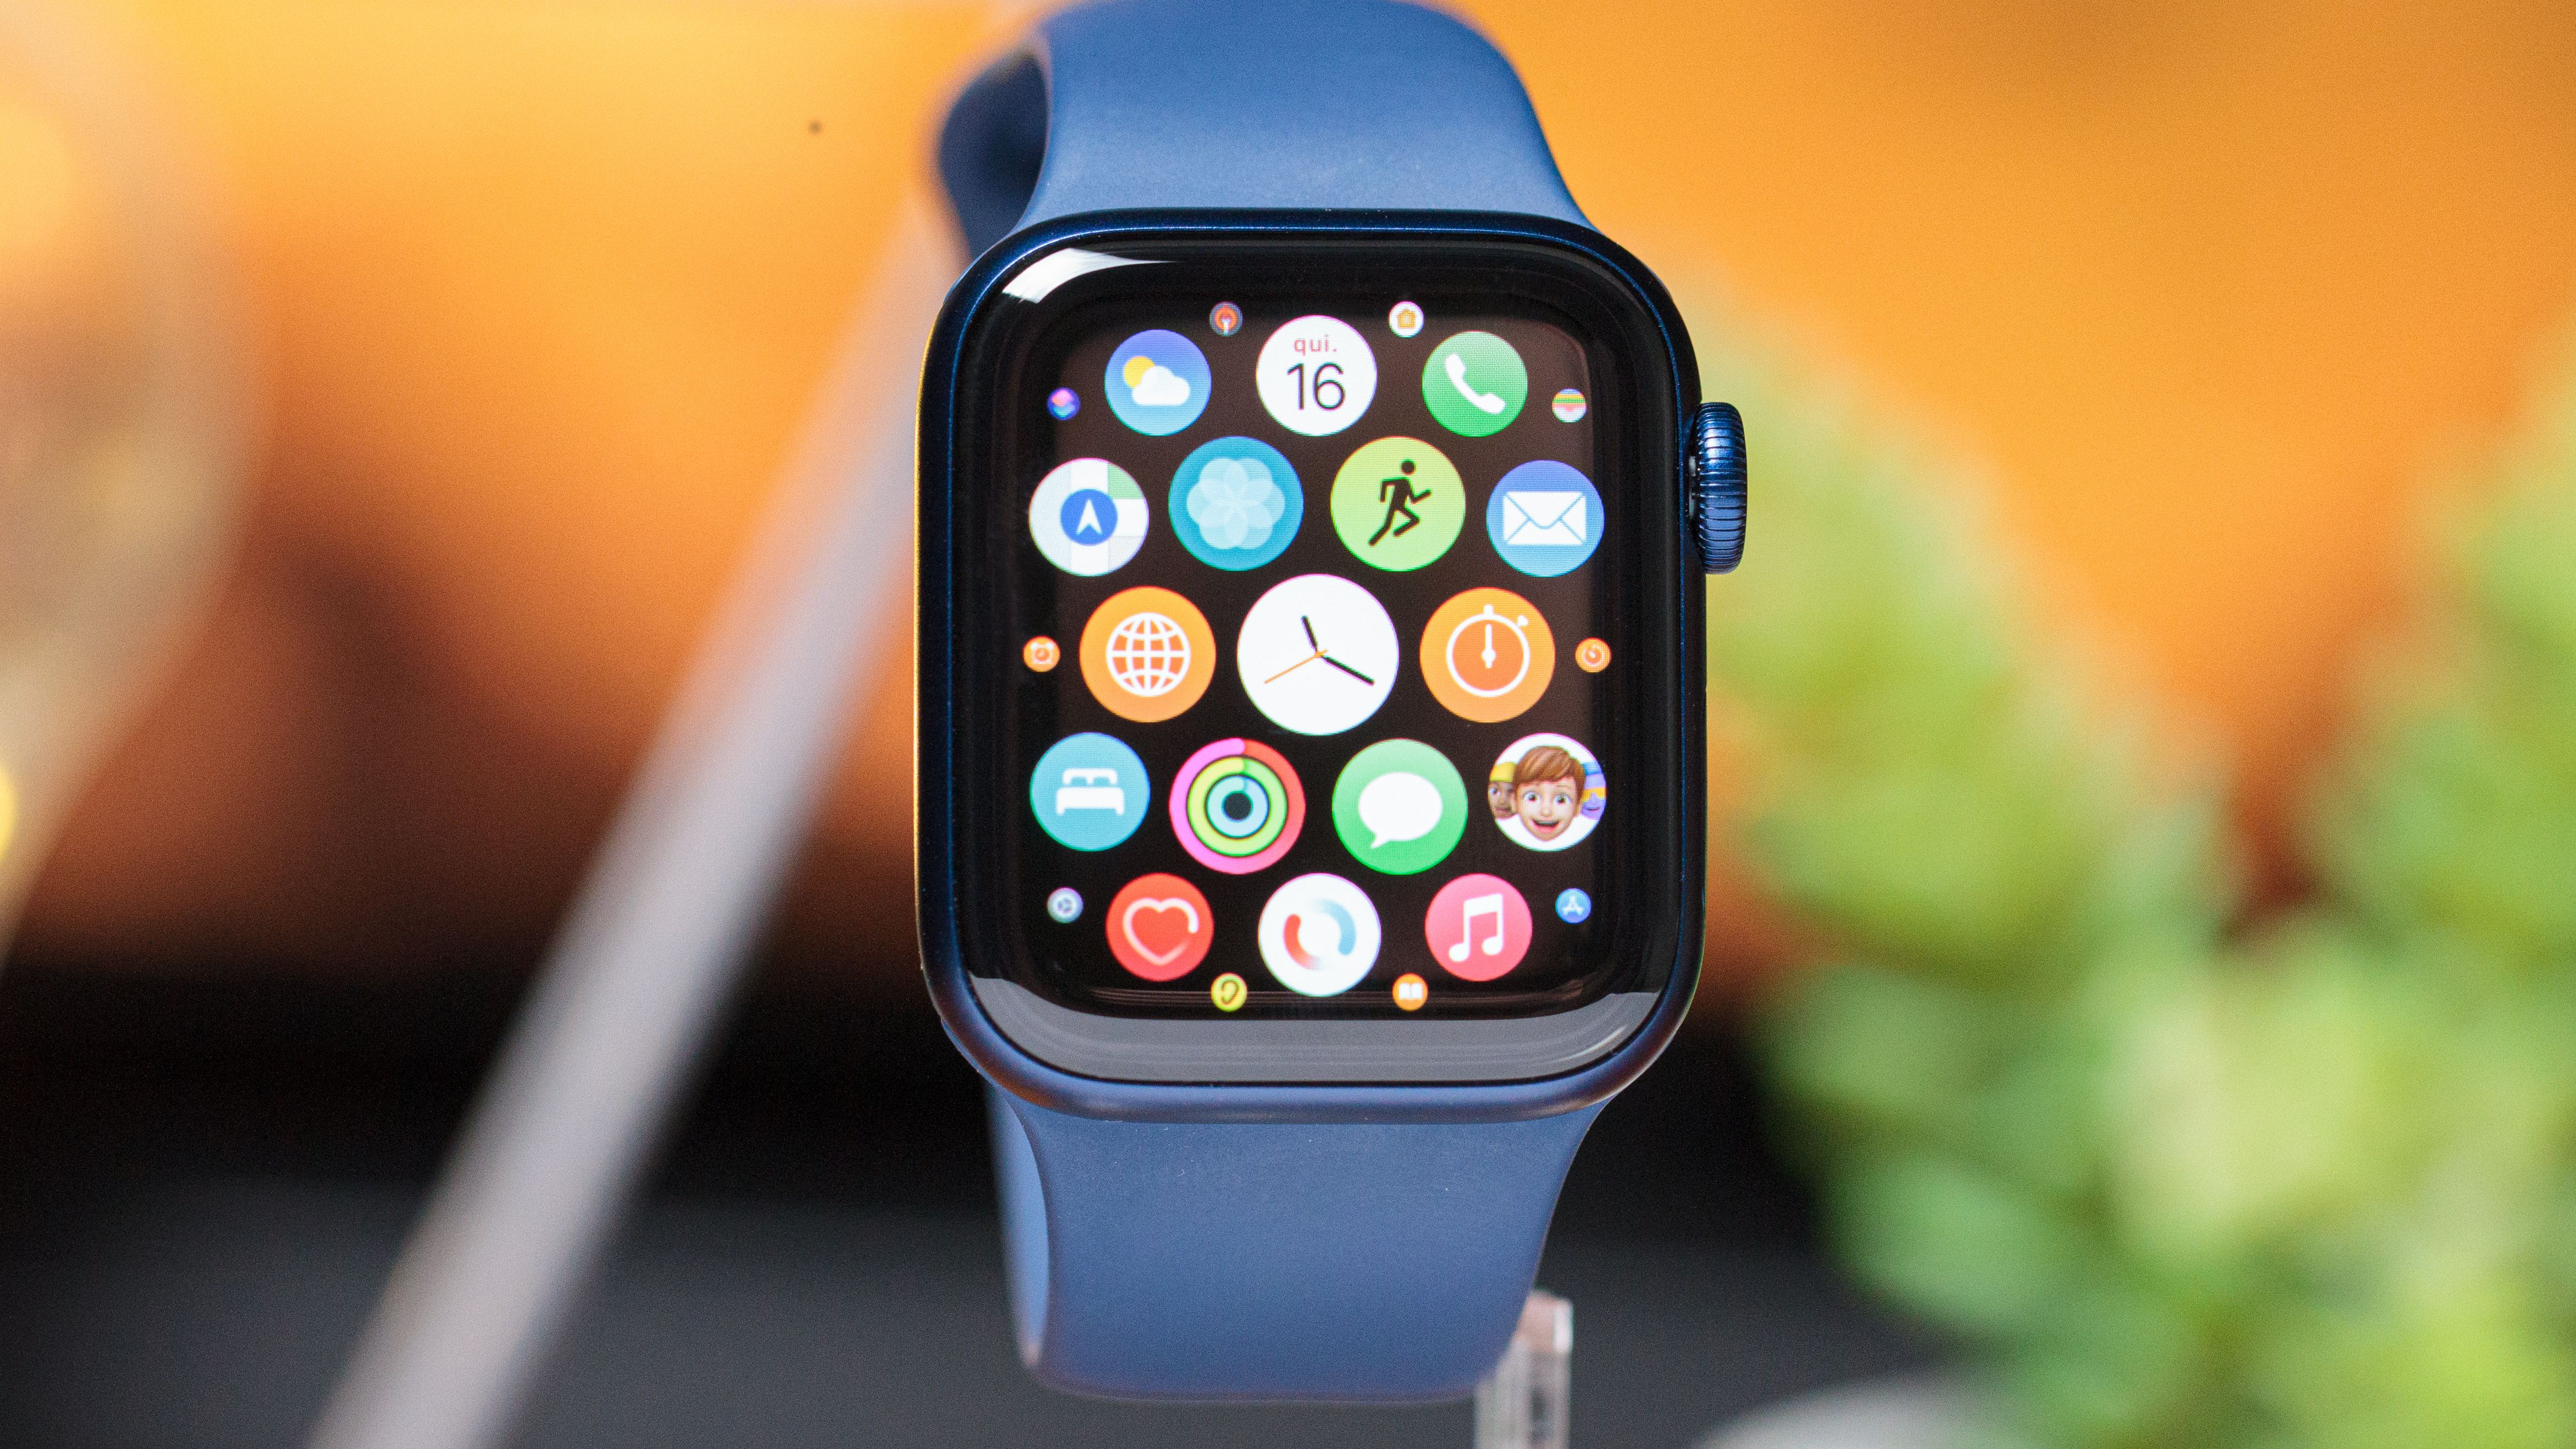 Smartwatch Apple Watch Series 3 42,0 mm 8 GB com o Melhor Preço é